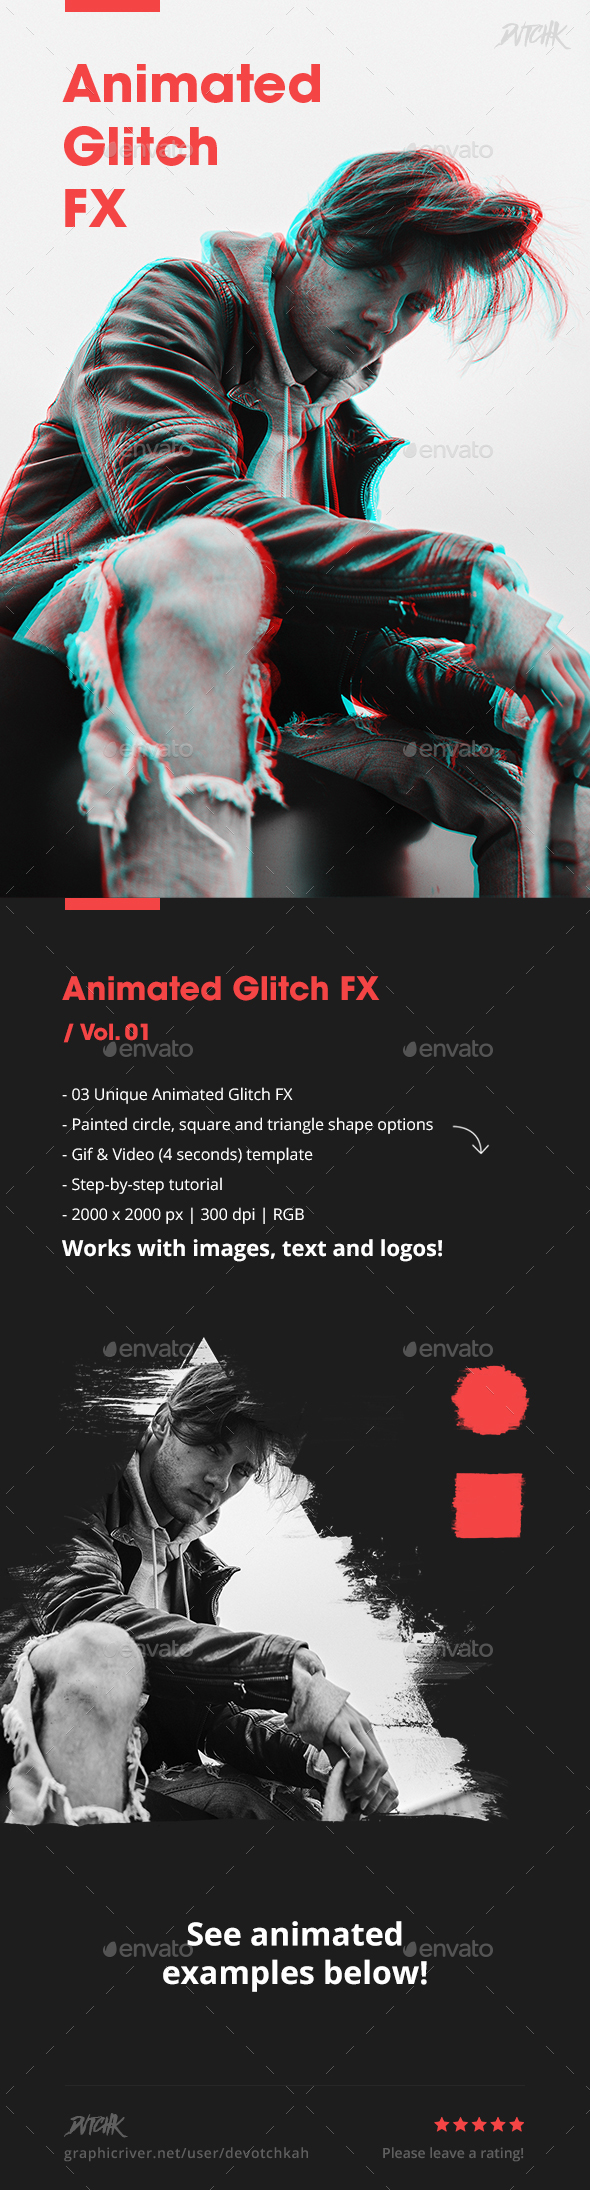 Animated Glitch FX - Vol. 01